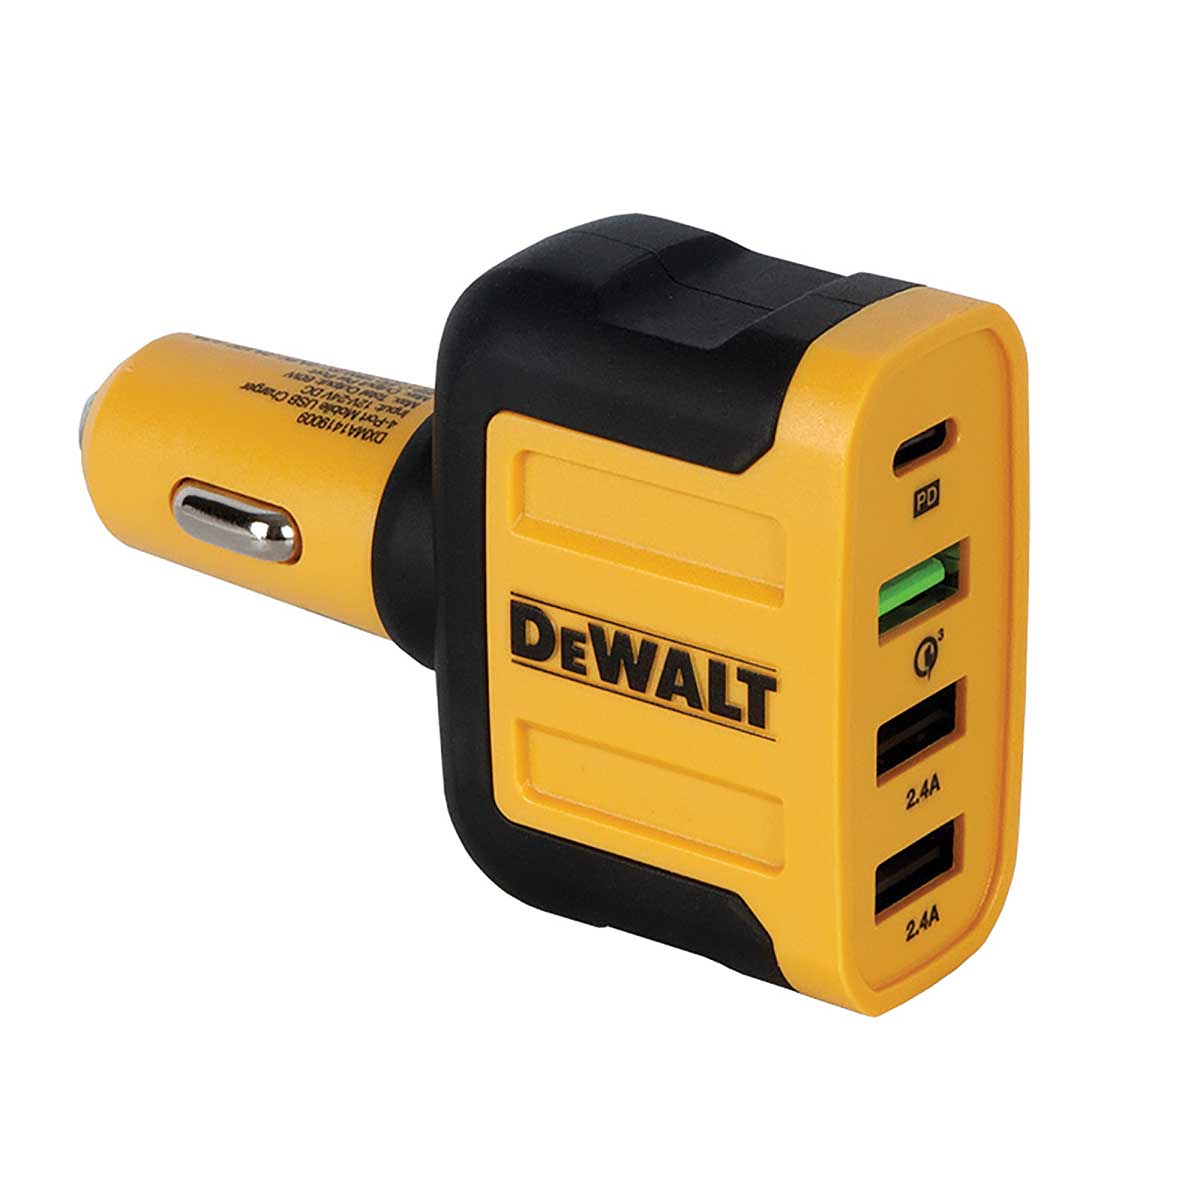 DEWALT 4-Port Mobile USB PD Charger